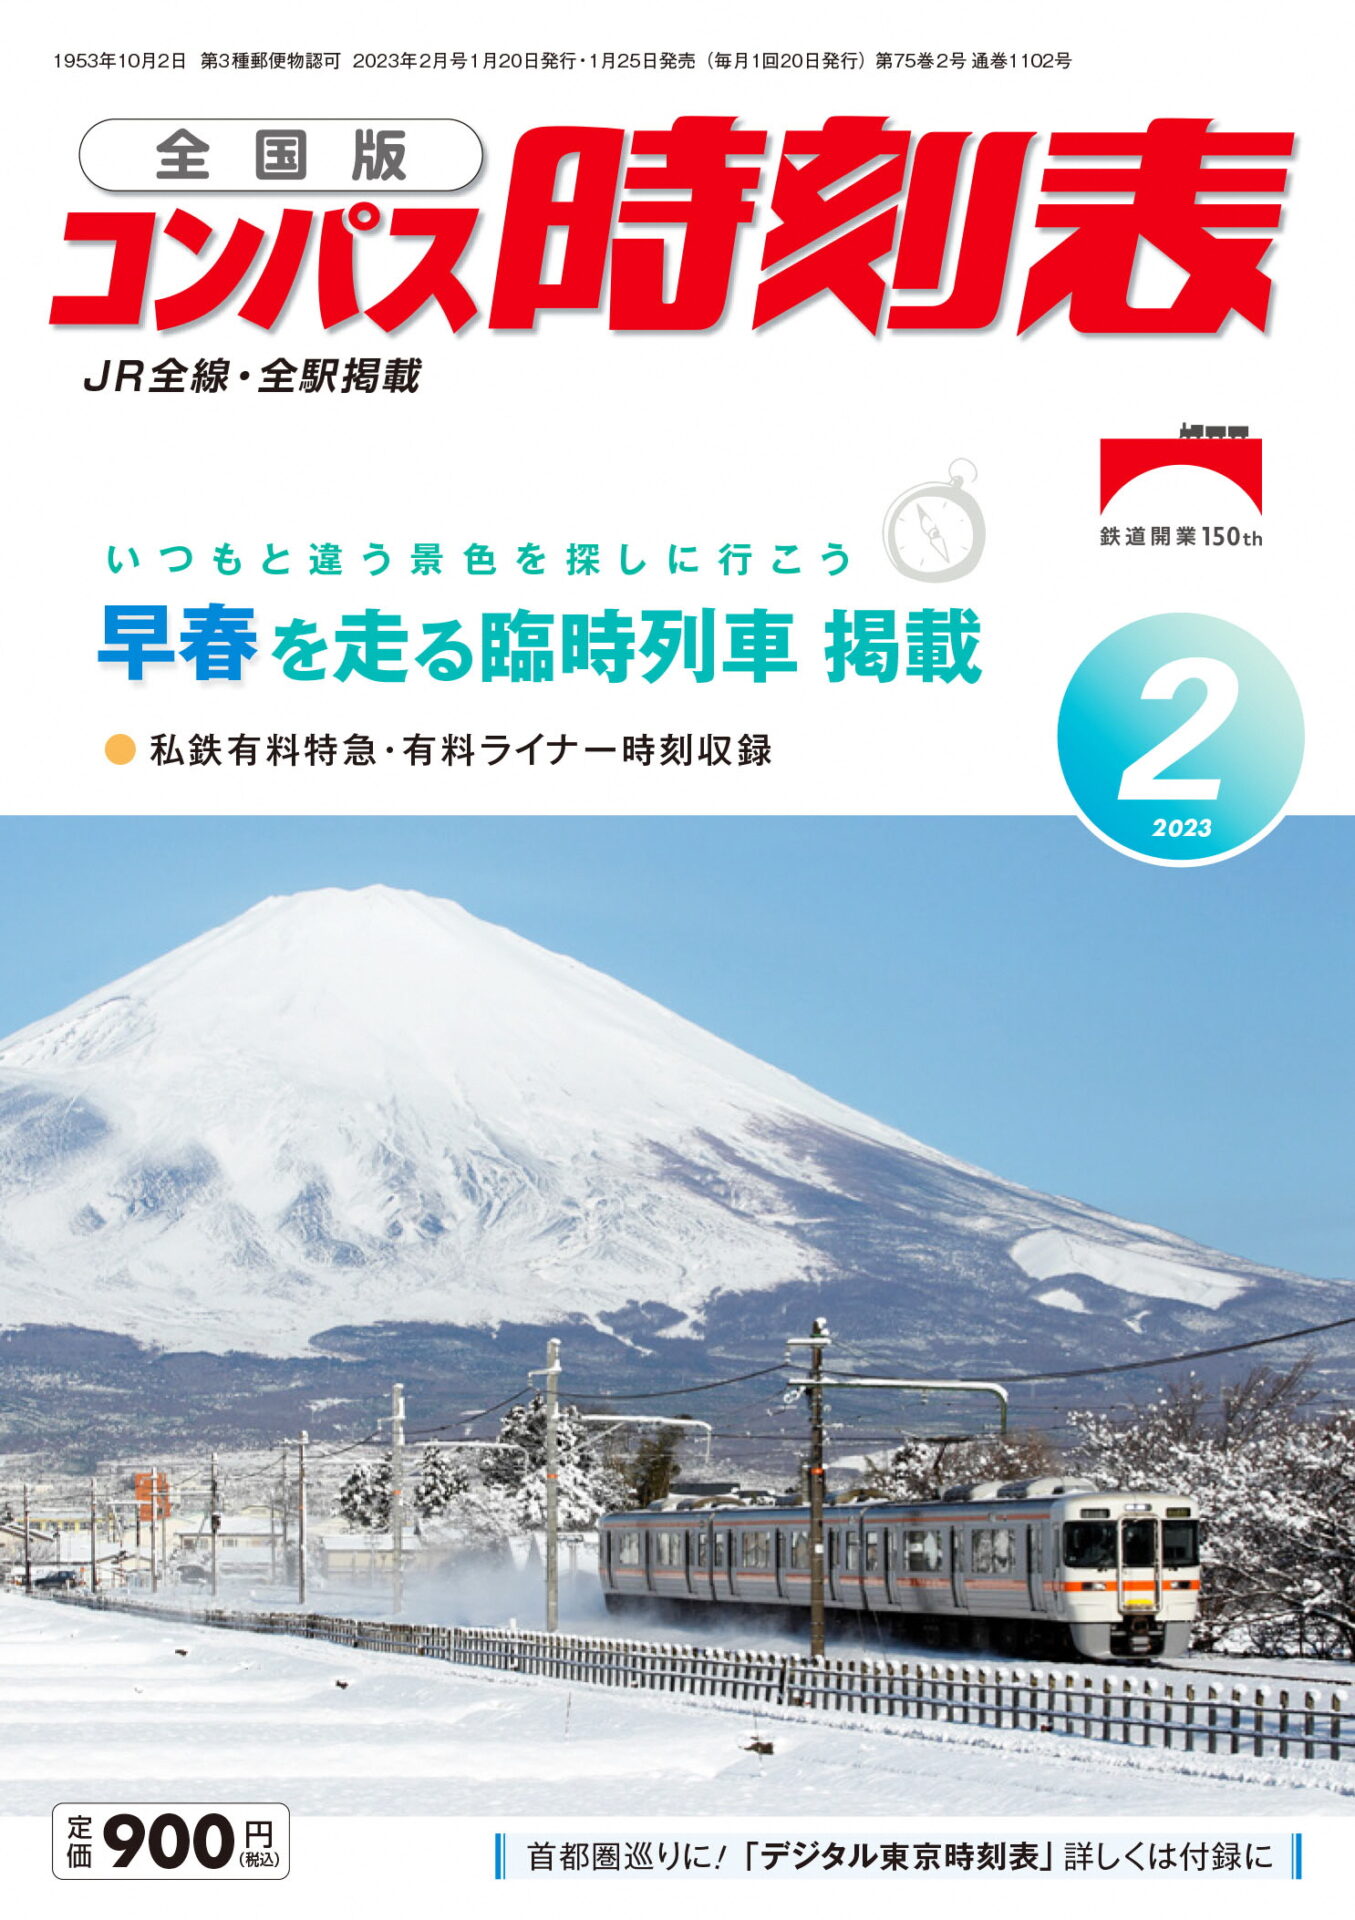 全国版コンパス時刻表表紙に「富士山と御殿場線」が掲載